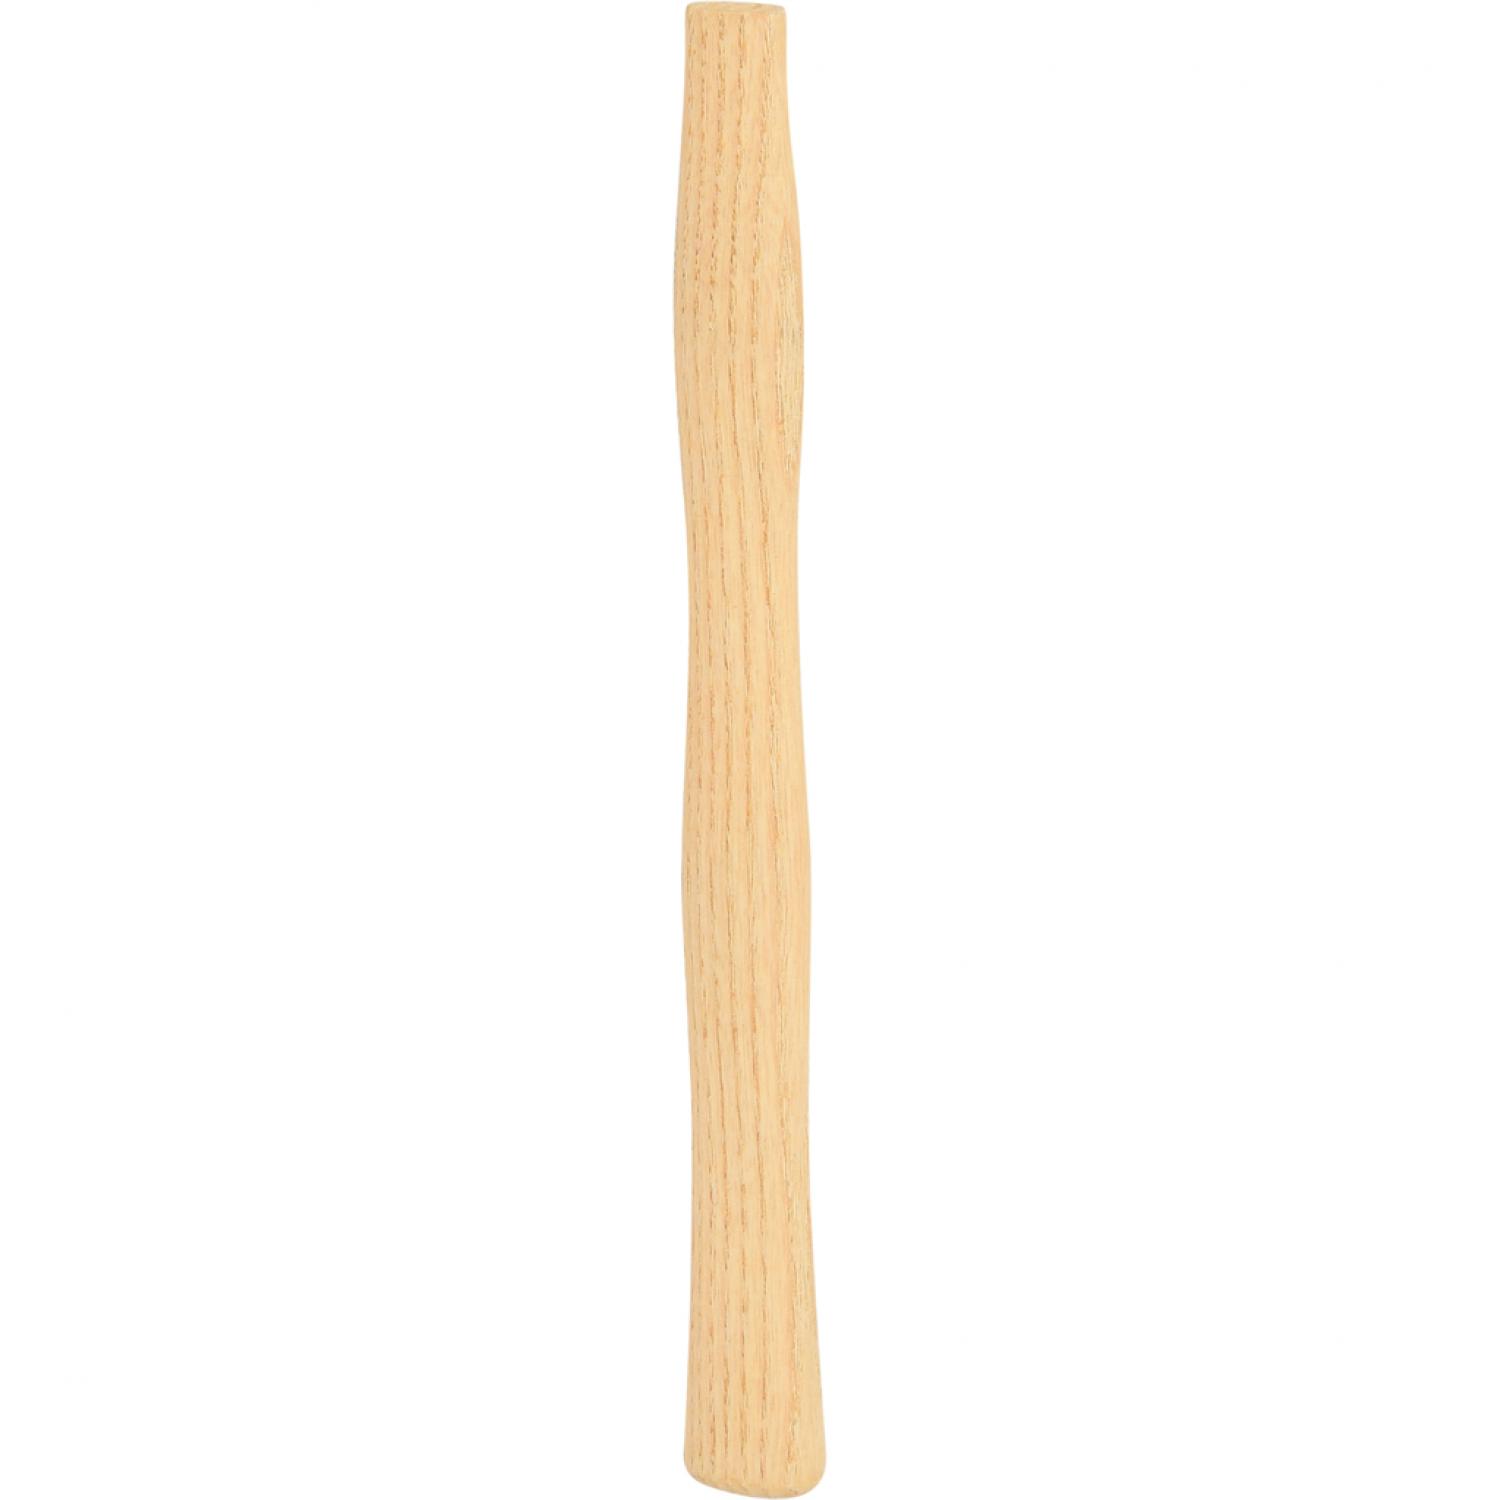 Запасная рукоятка, древесина гикори, конусный клин, 260 мм